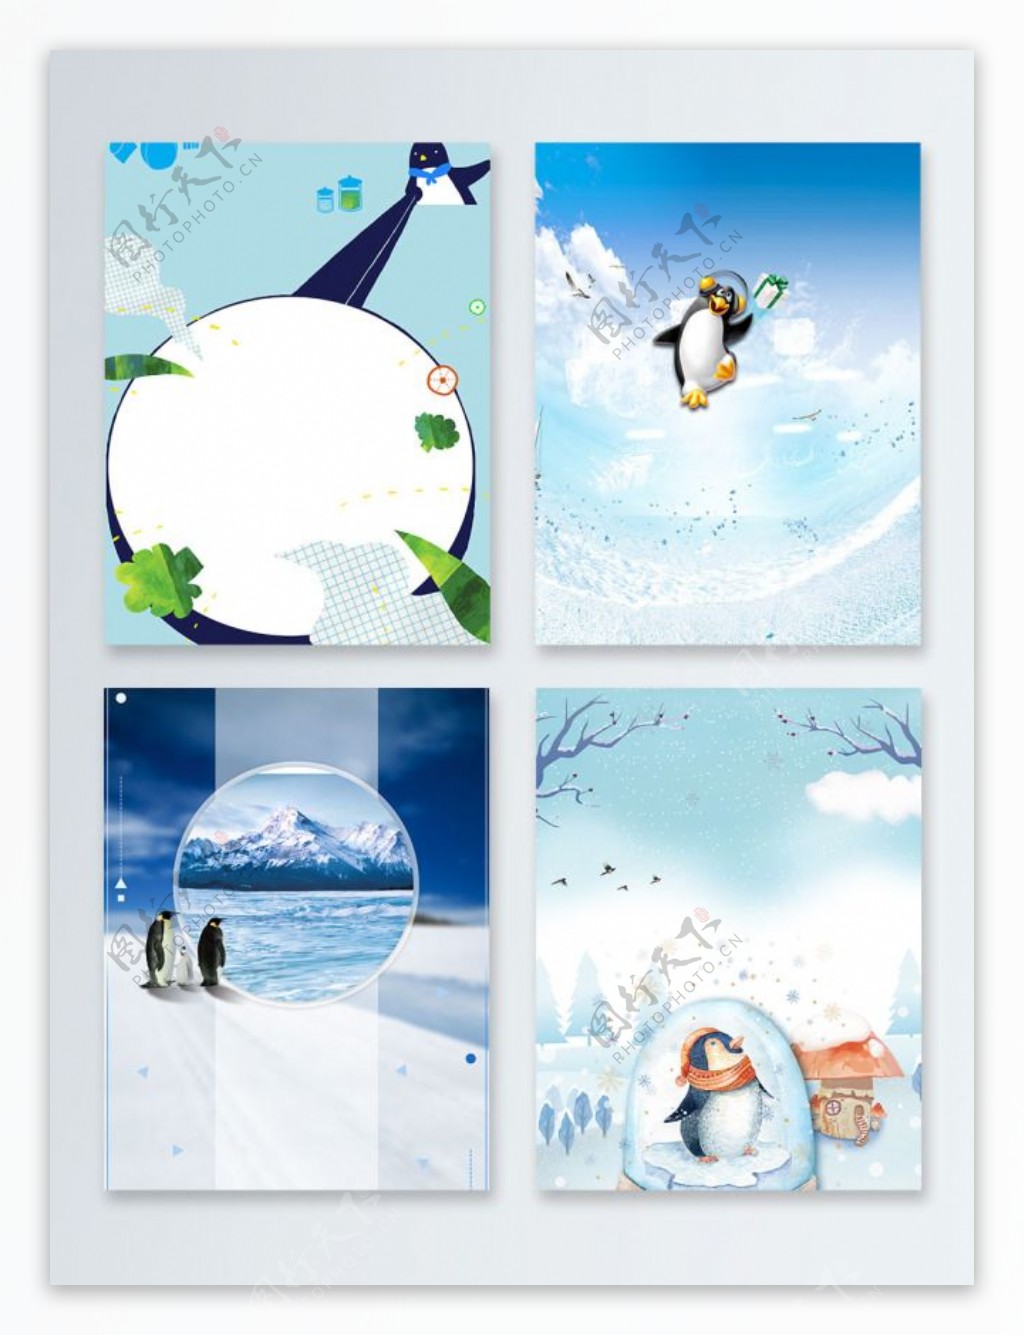 企鹅冬季蓝色北极广告背景